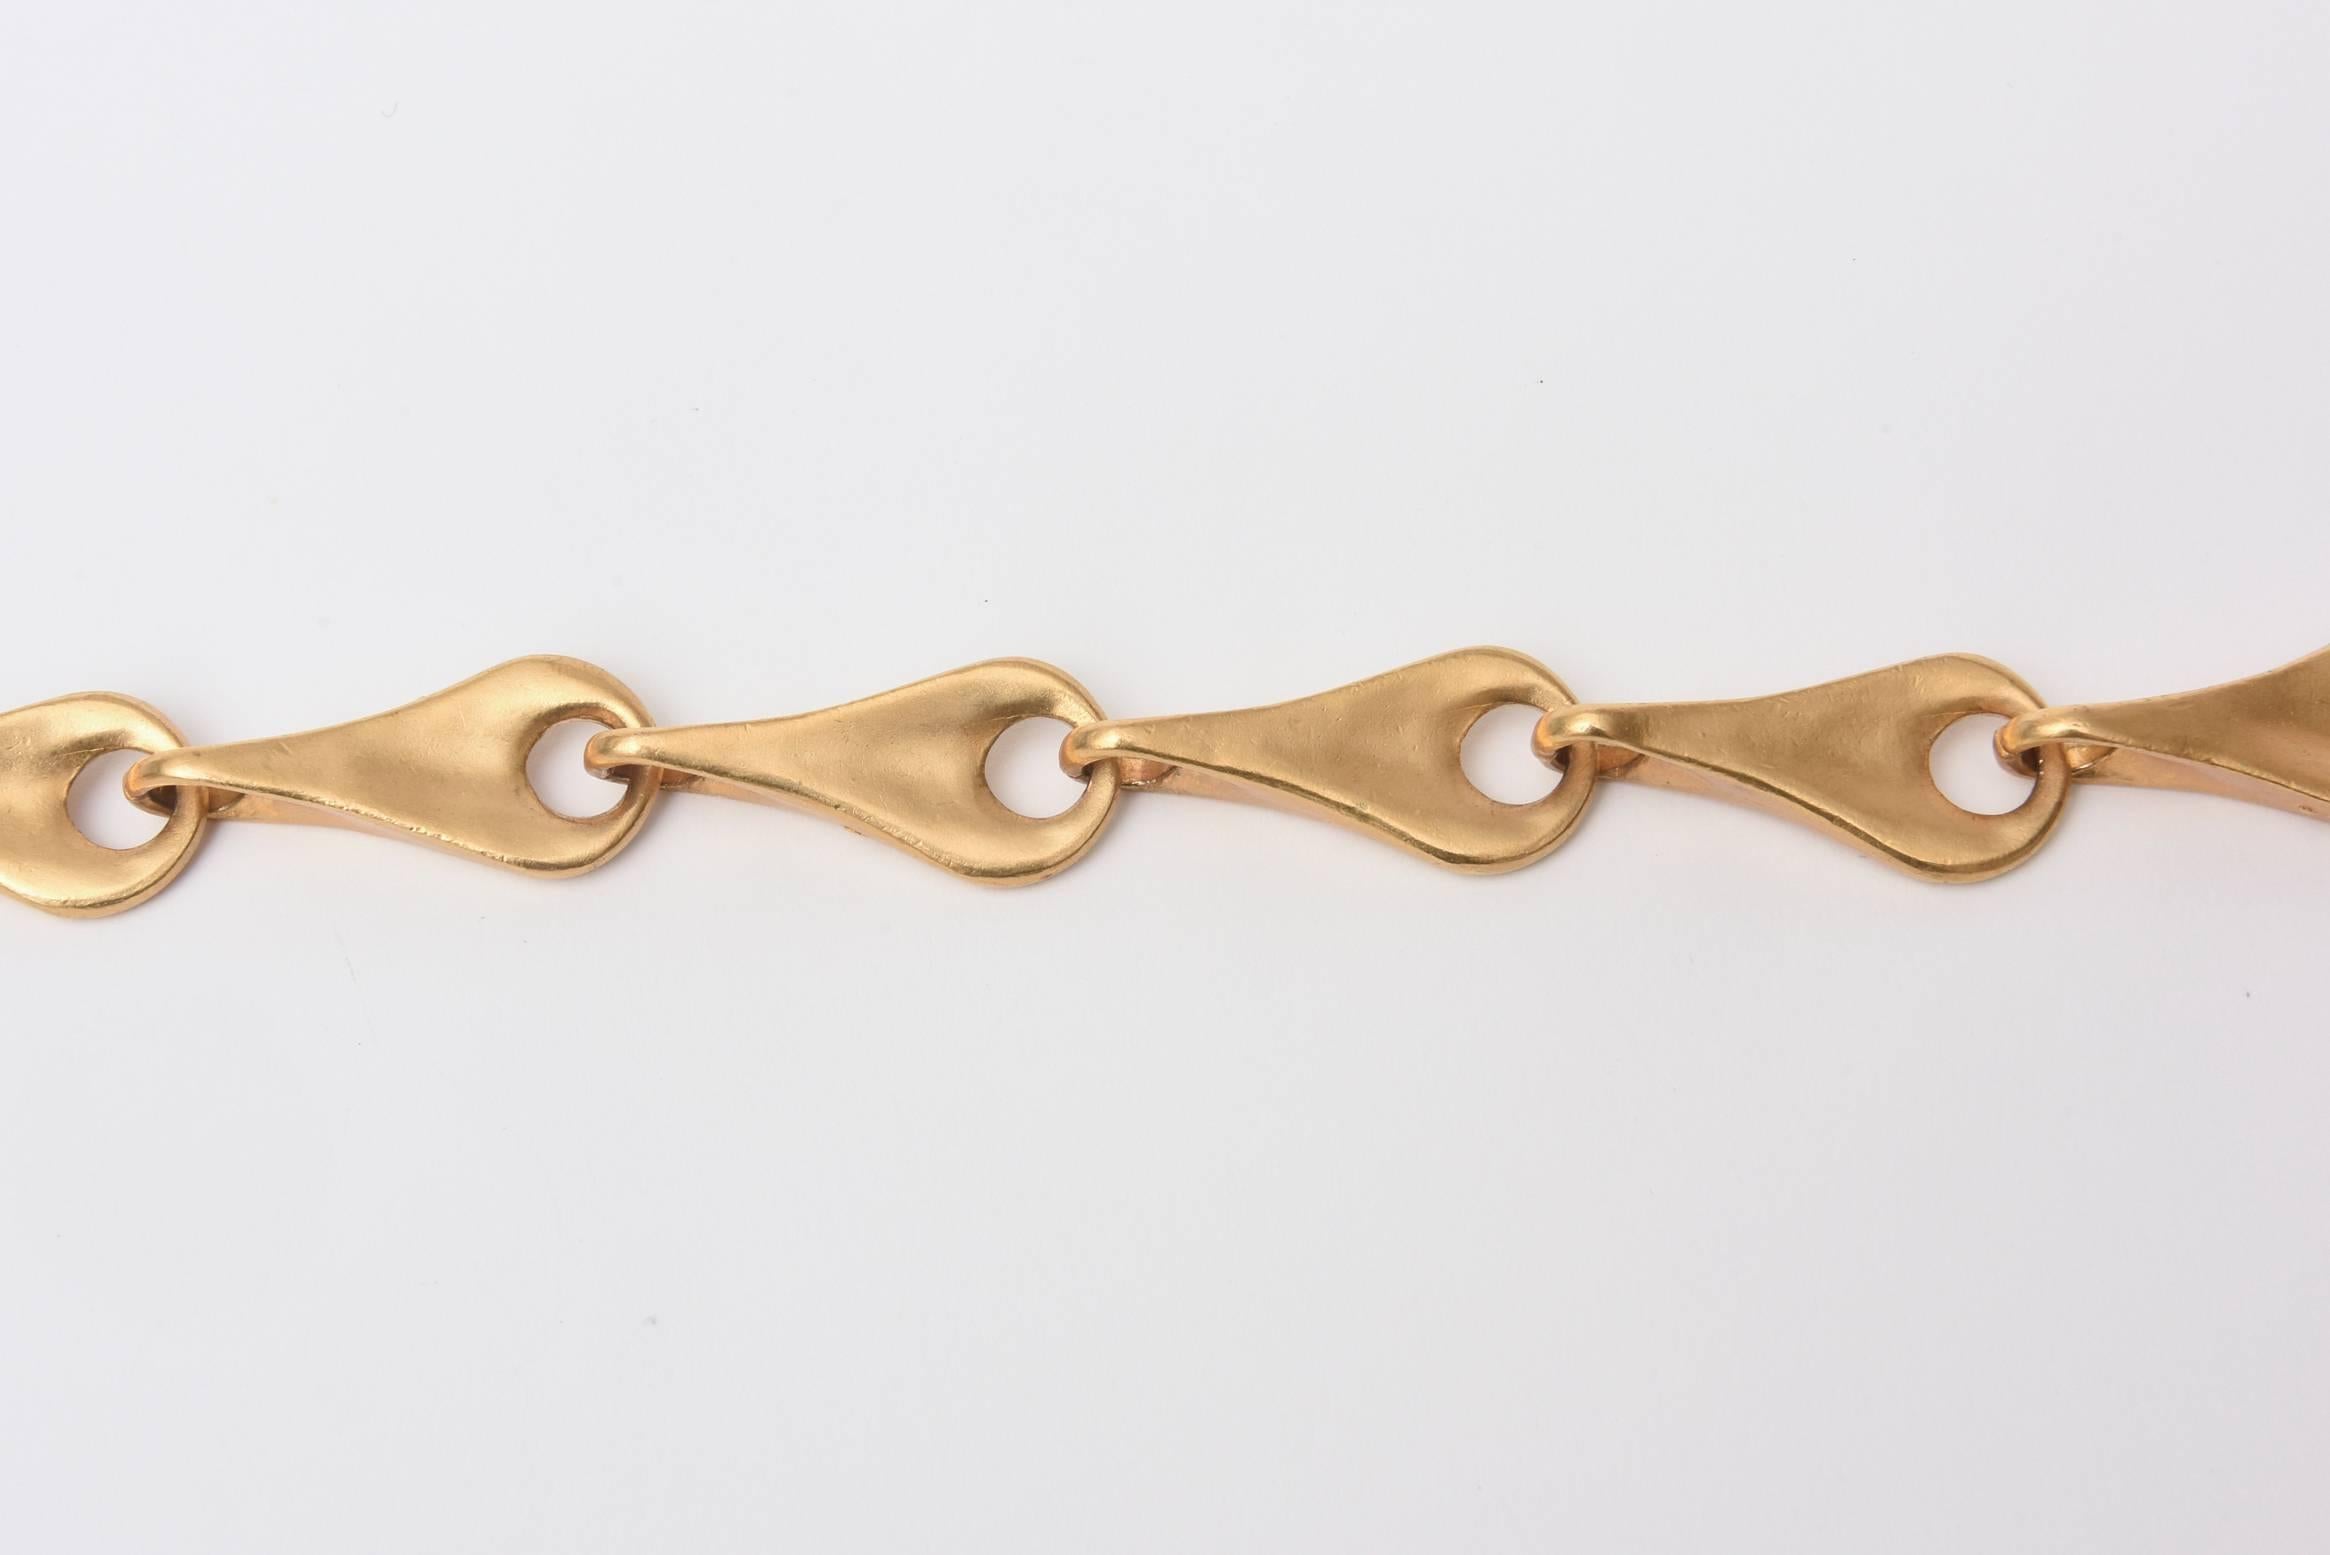 Ce collier d'époque a été conçu et réalisé à la fin des années 70 par Robert Lee Morris lorsqu'il avait sa galerie Art Wear à NYC/ Soho. C'est un bel exemple de ses formes sculpturales organiques et sensuelles.  Il s'agit aujourd'hui d'un collier